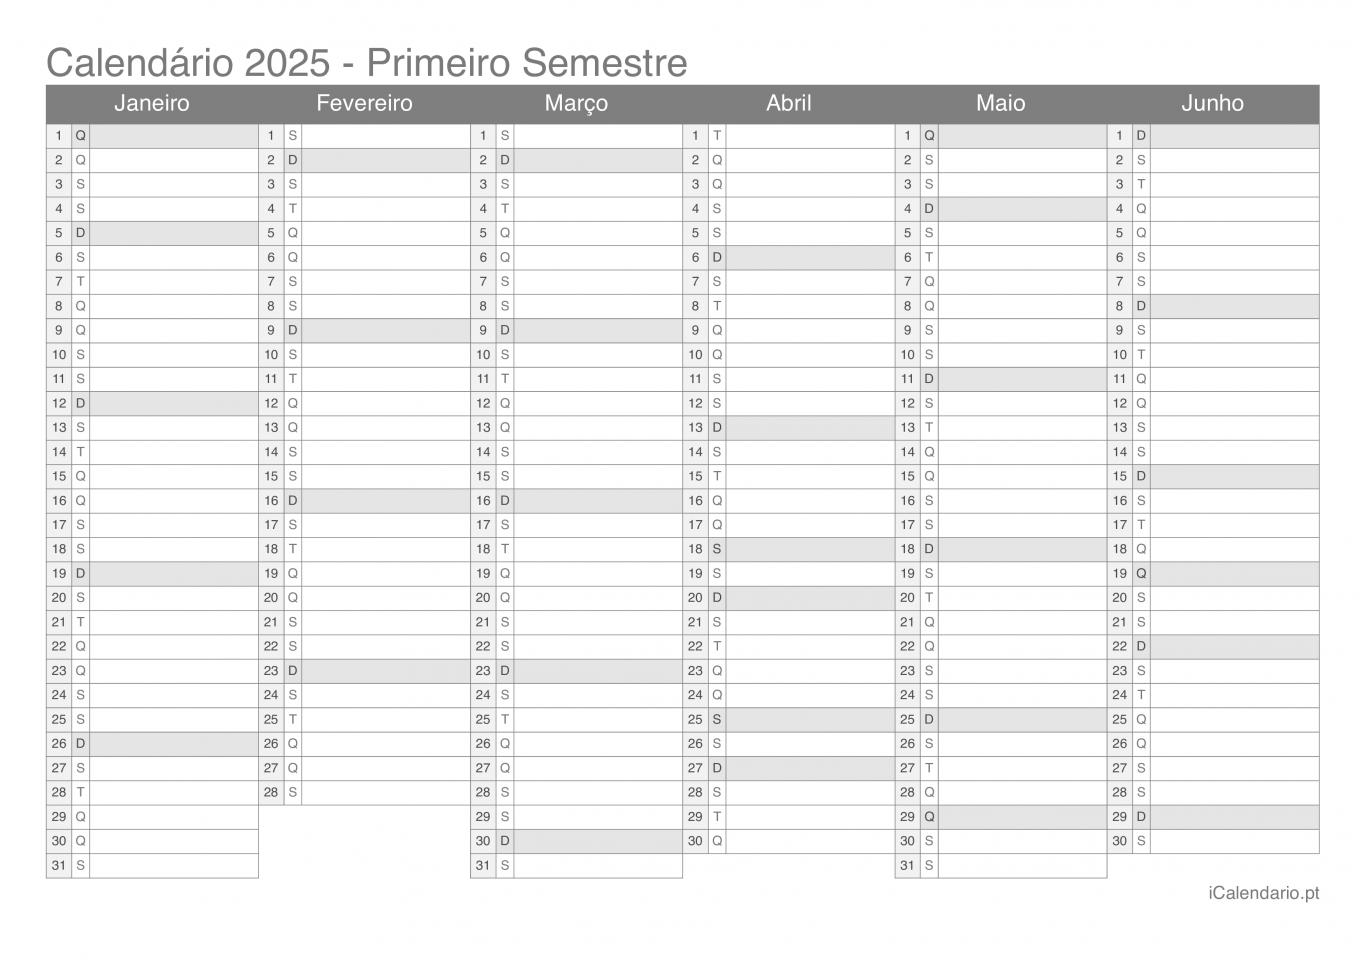 Calendário por semestre 2025